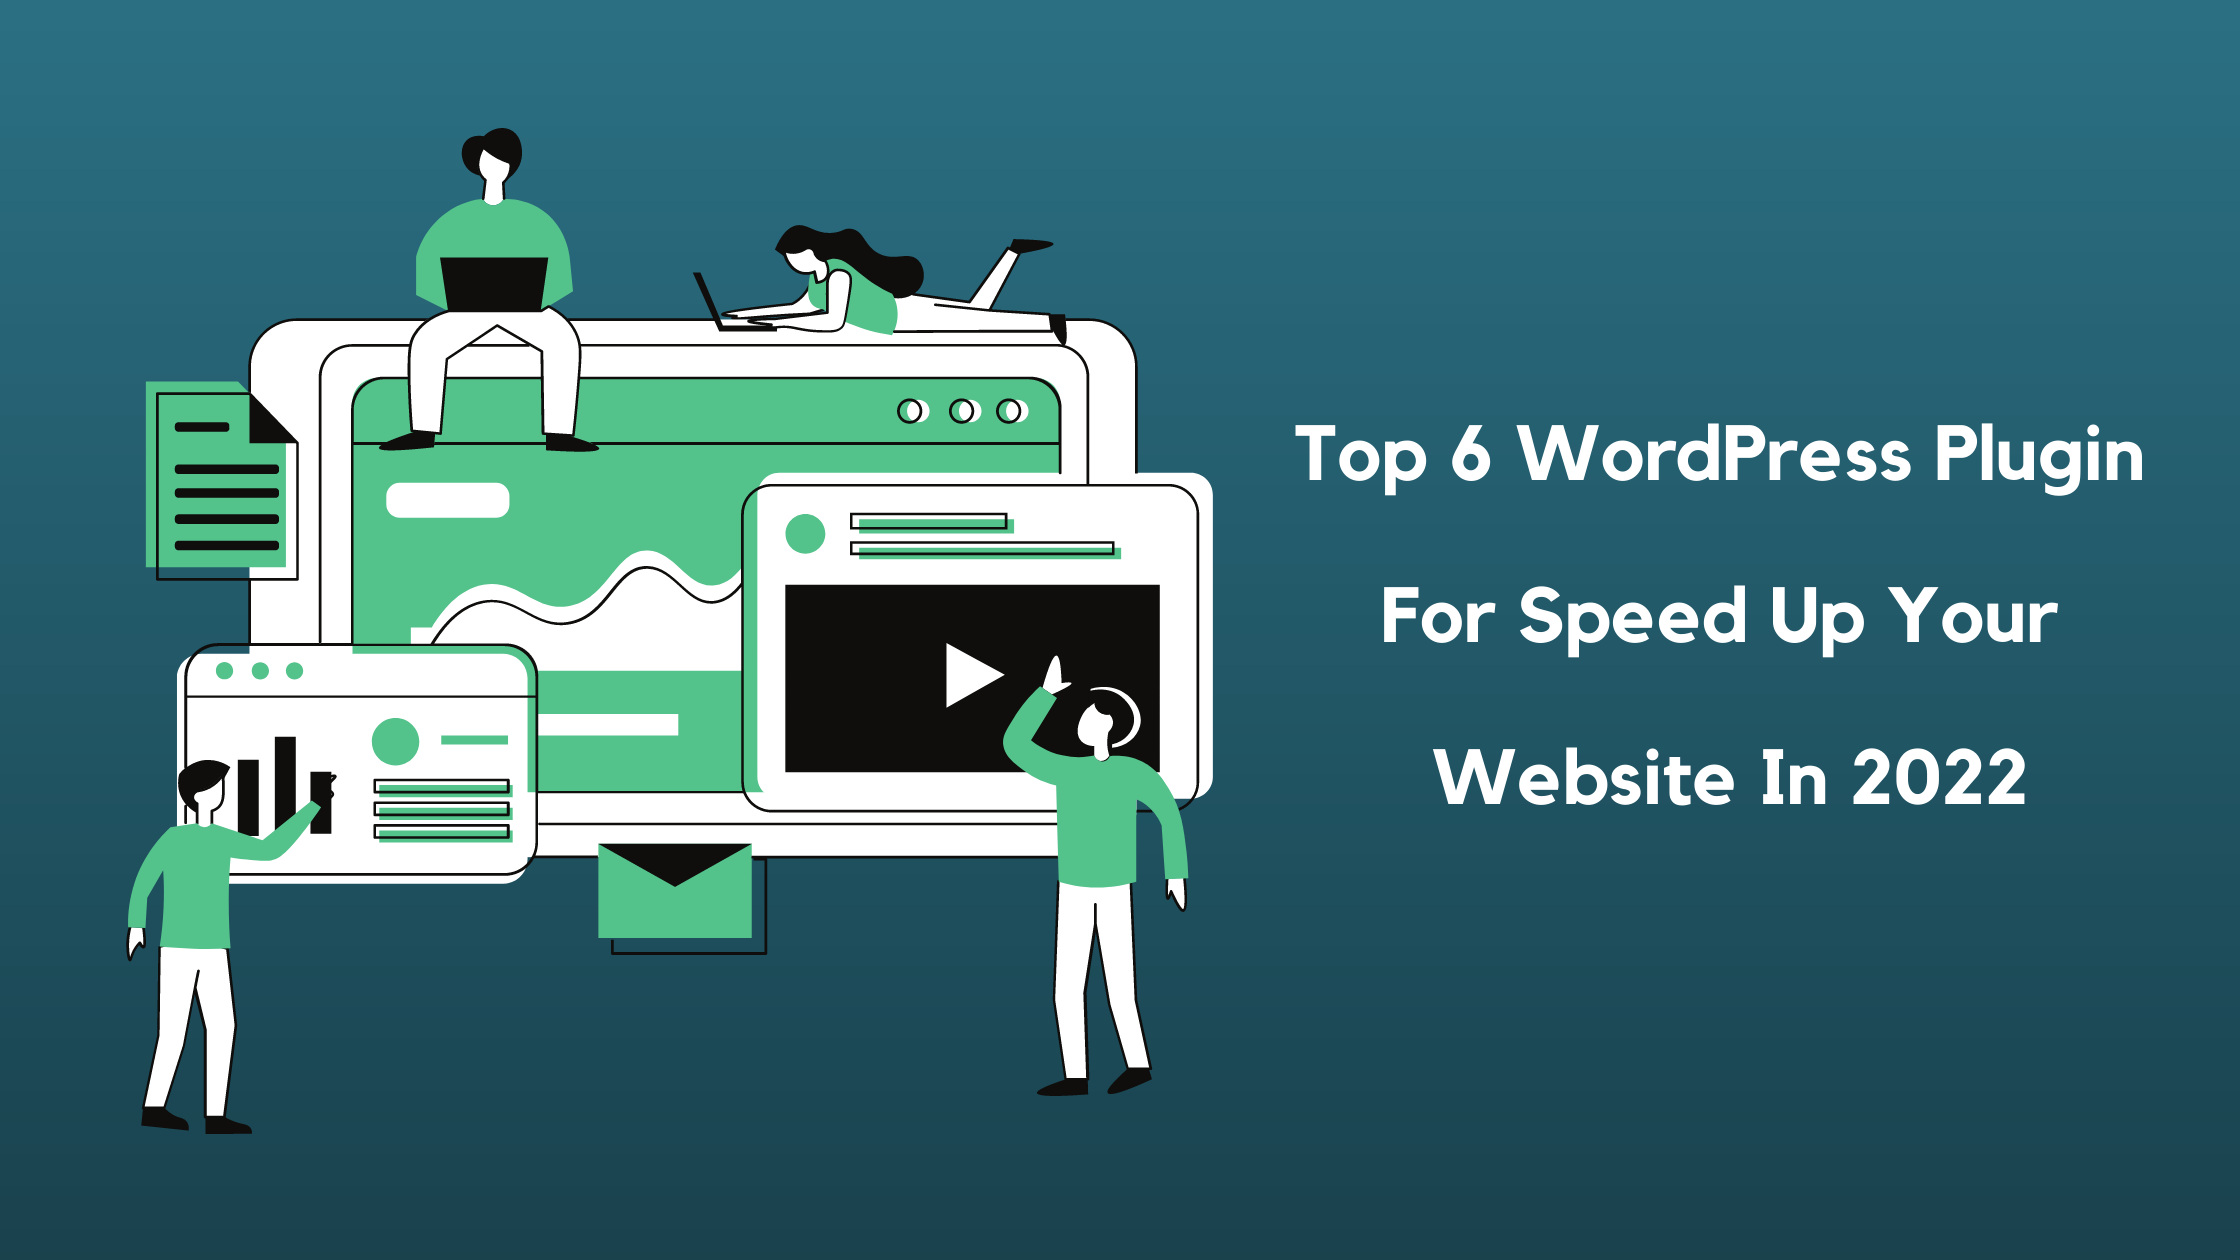 Top 6 WordPress Plugin For Speed Up Your WordPress Website In 2022